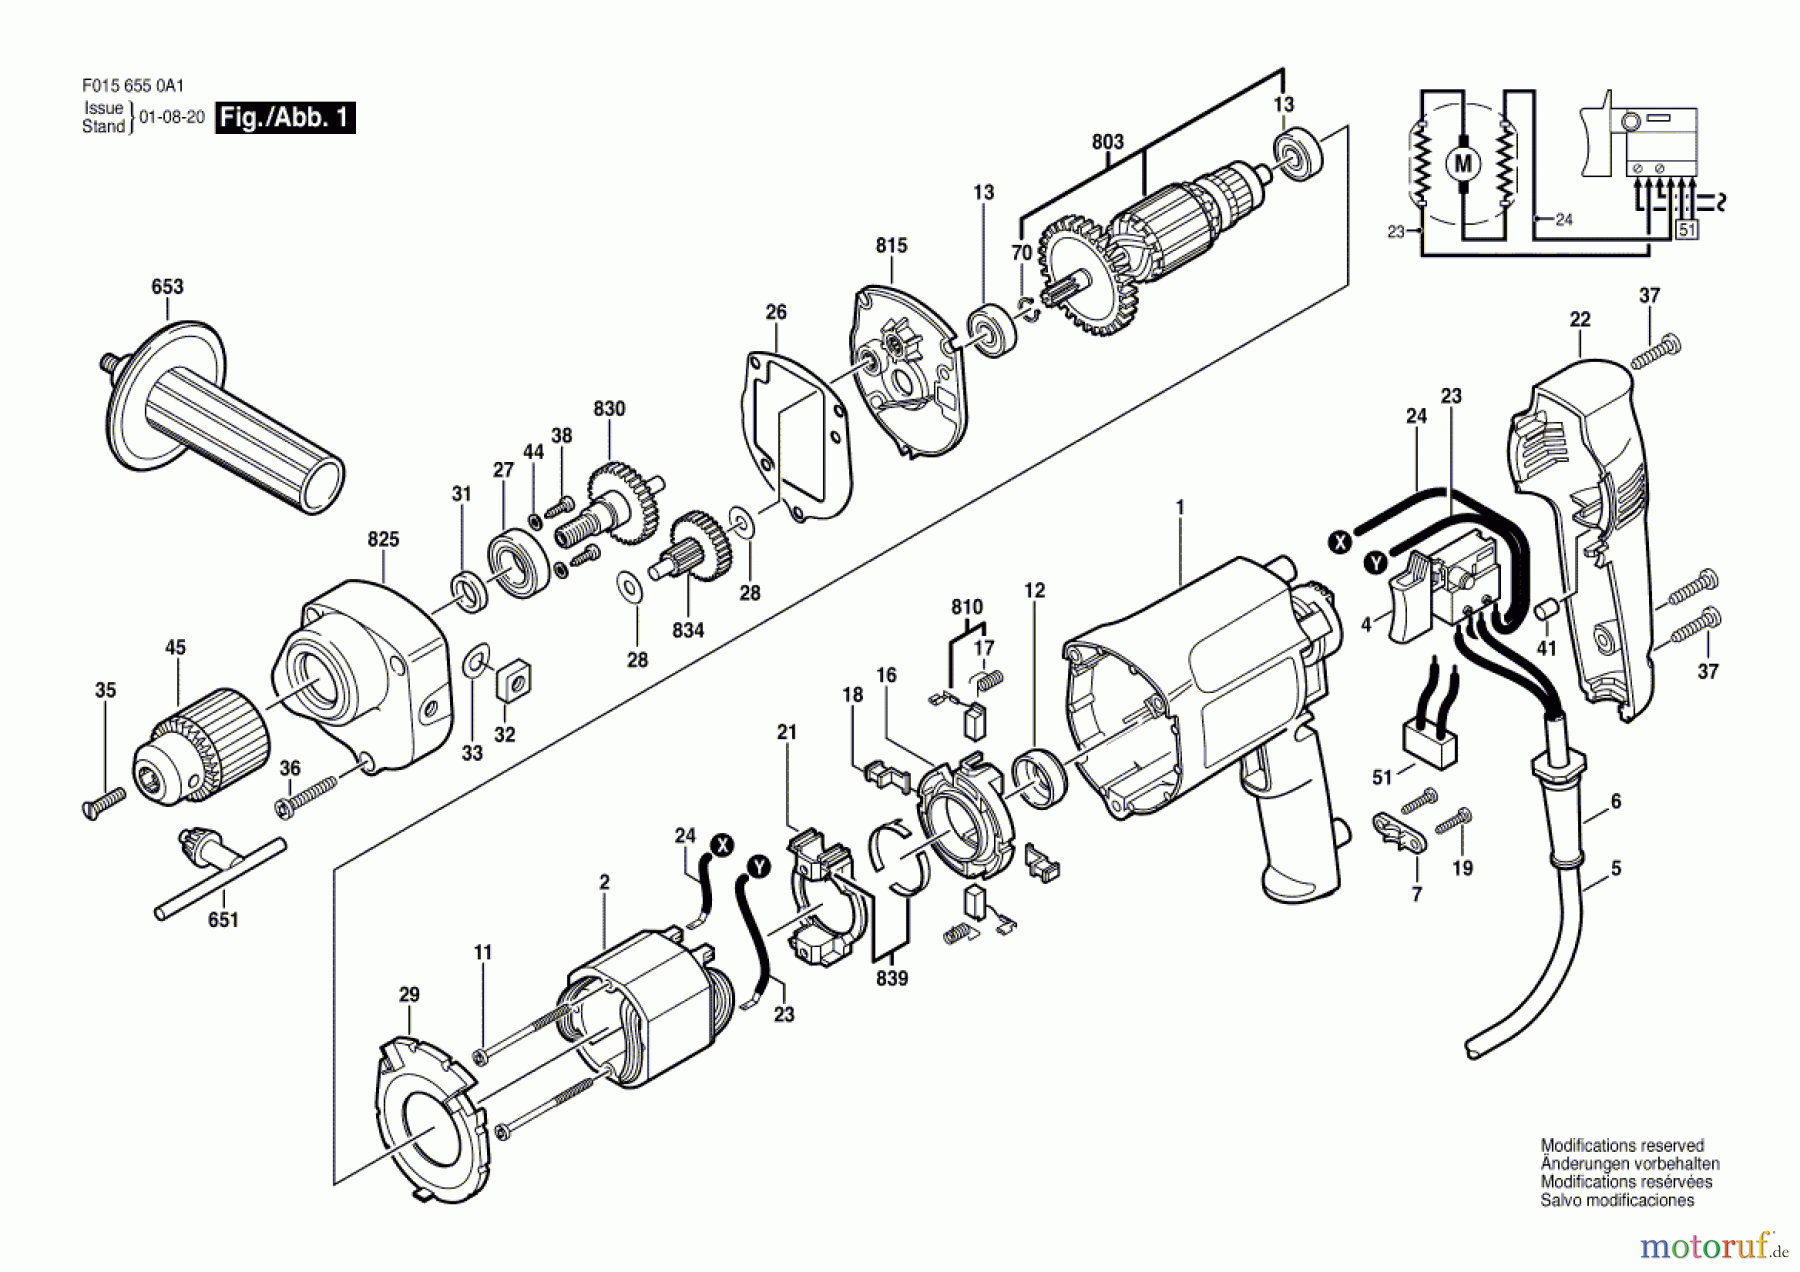  Bosch Werkzeug Bohrschrauber 6550 U1 Seite 1